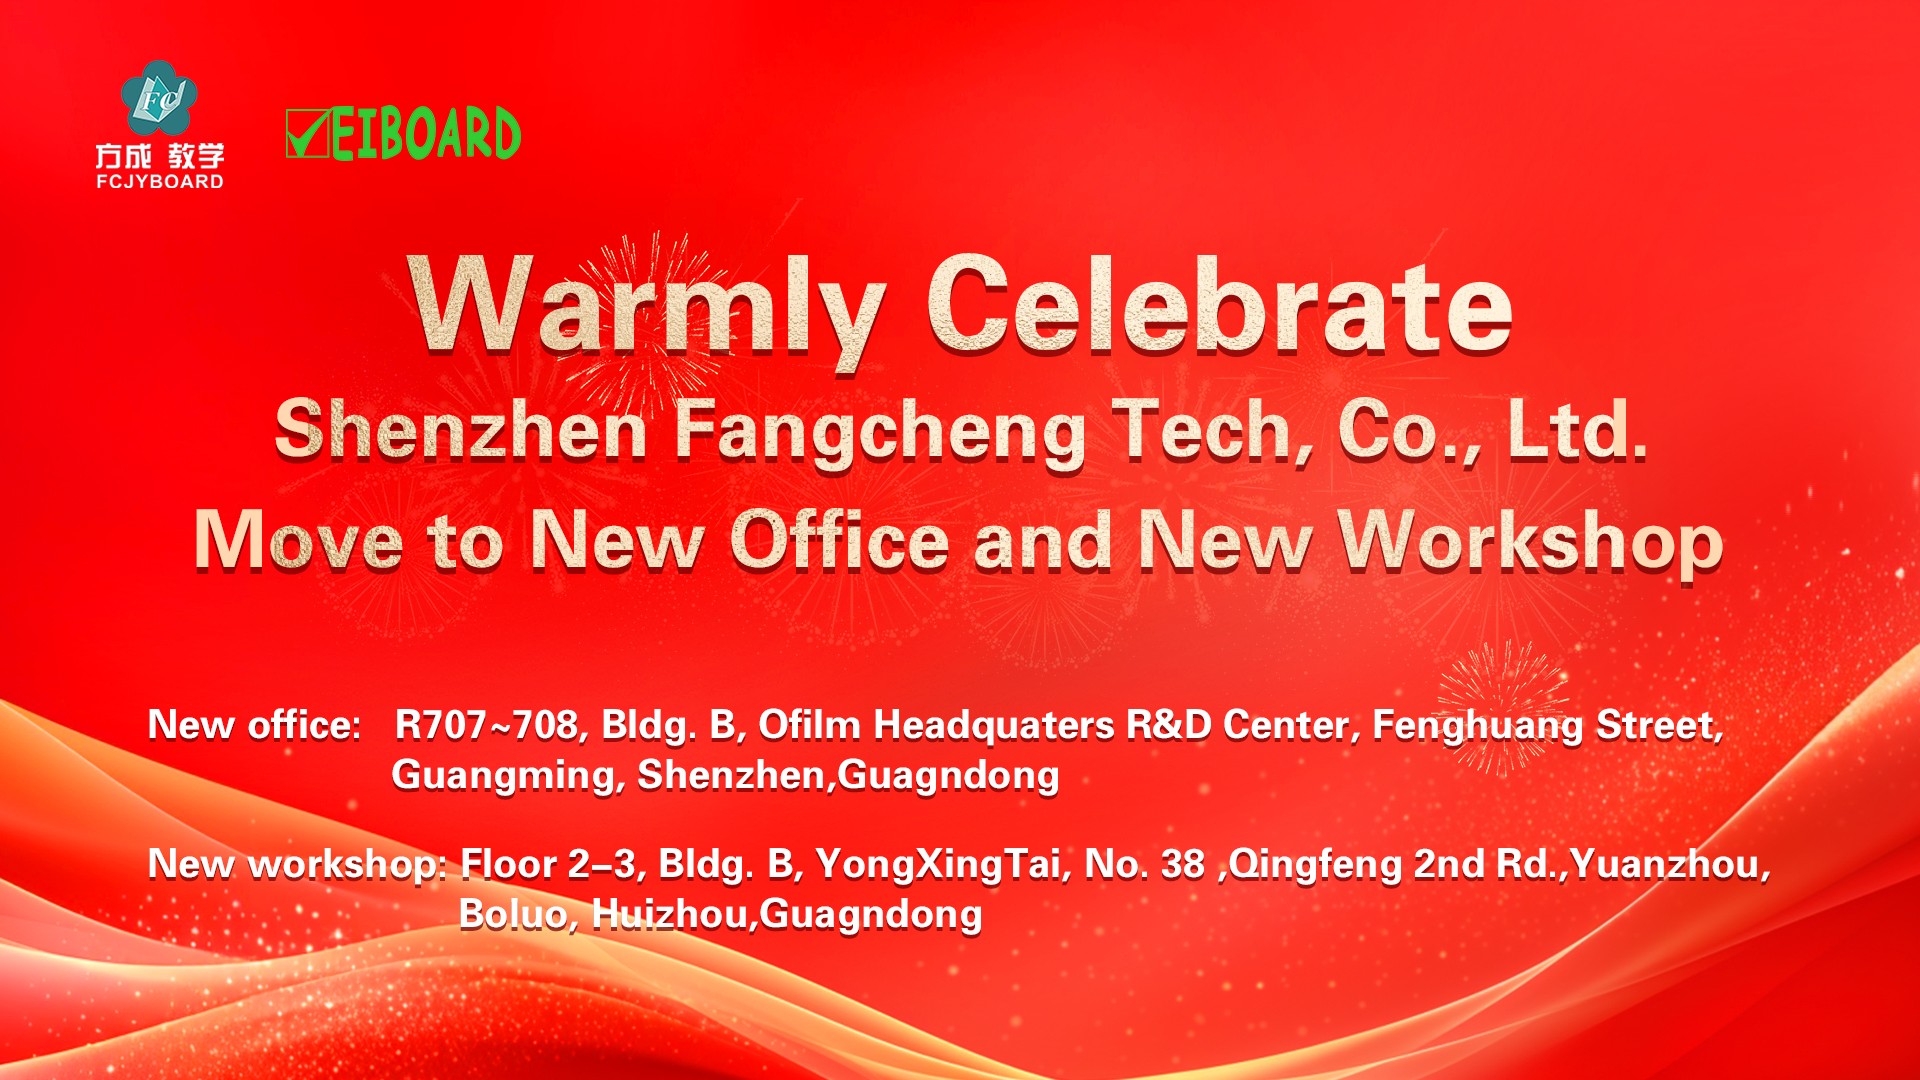 Shenzhen Fangcheng Tech Co., Ltd. Жаңа кеңсеге және жаңа шеберханаға көшіңіз!